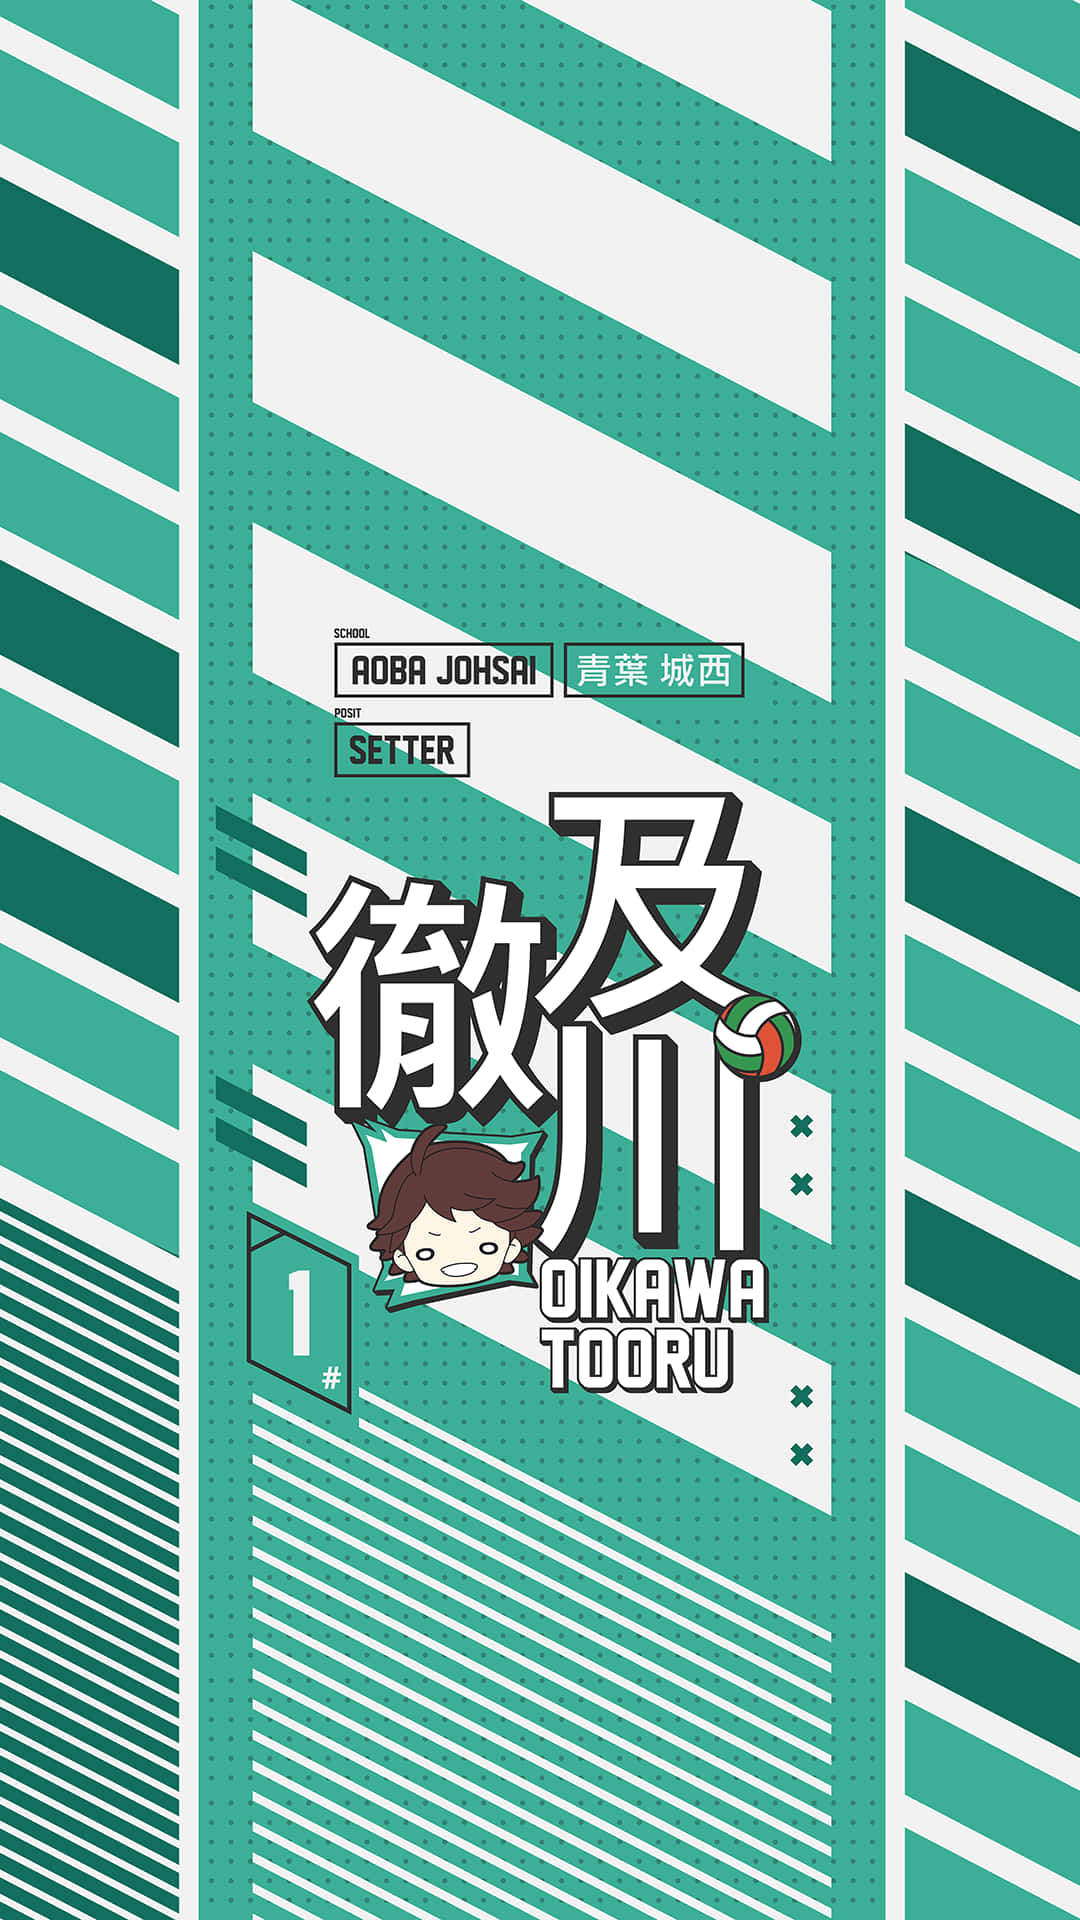 Aoba Johsai Oikawa Tooru Phone Wallpaper